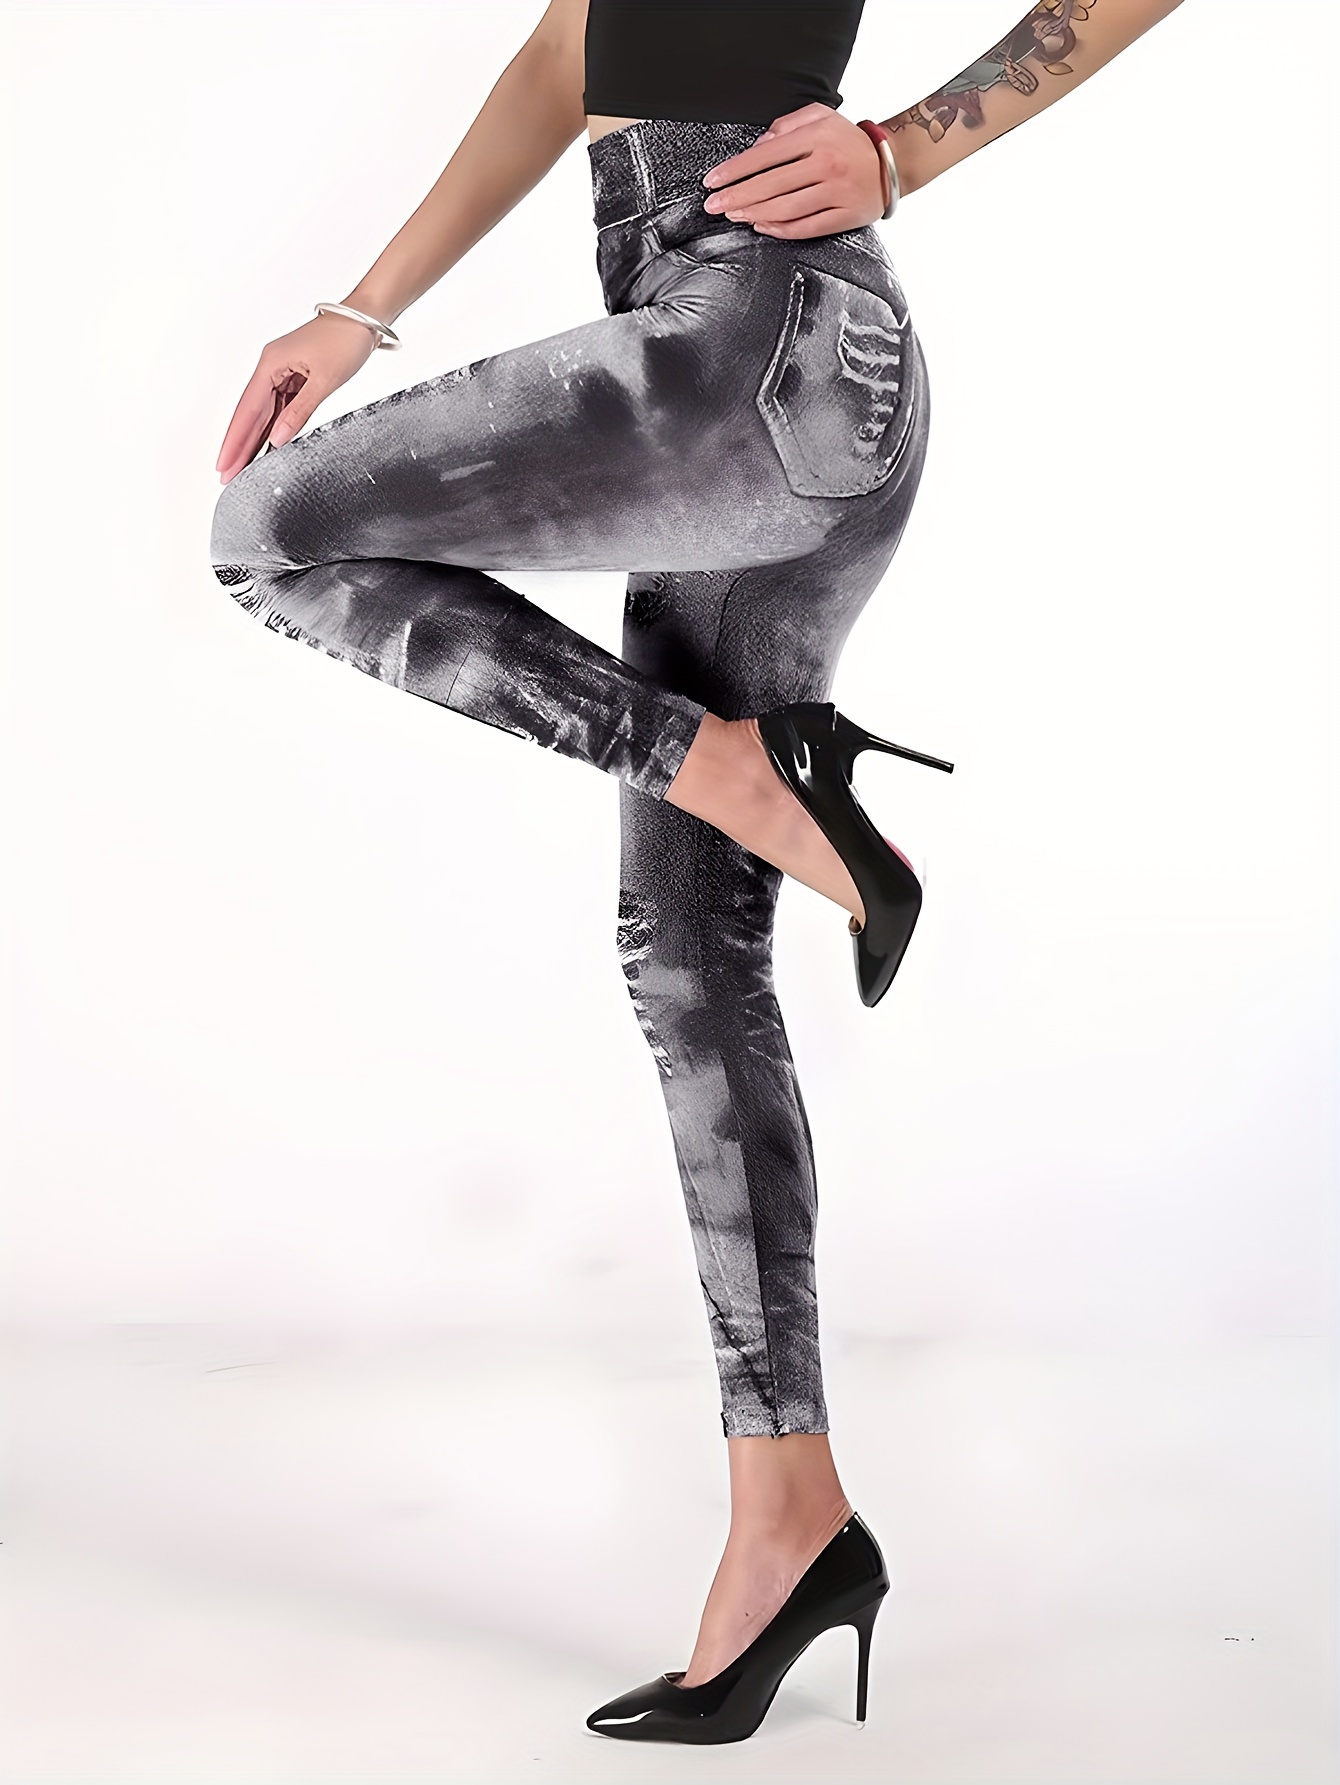 Pantalon Leggings Yoga Femme Avec Talon Femme Fitness Yoga